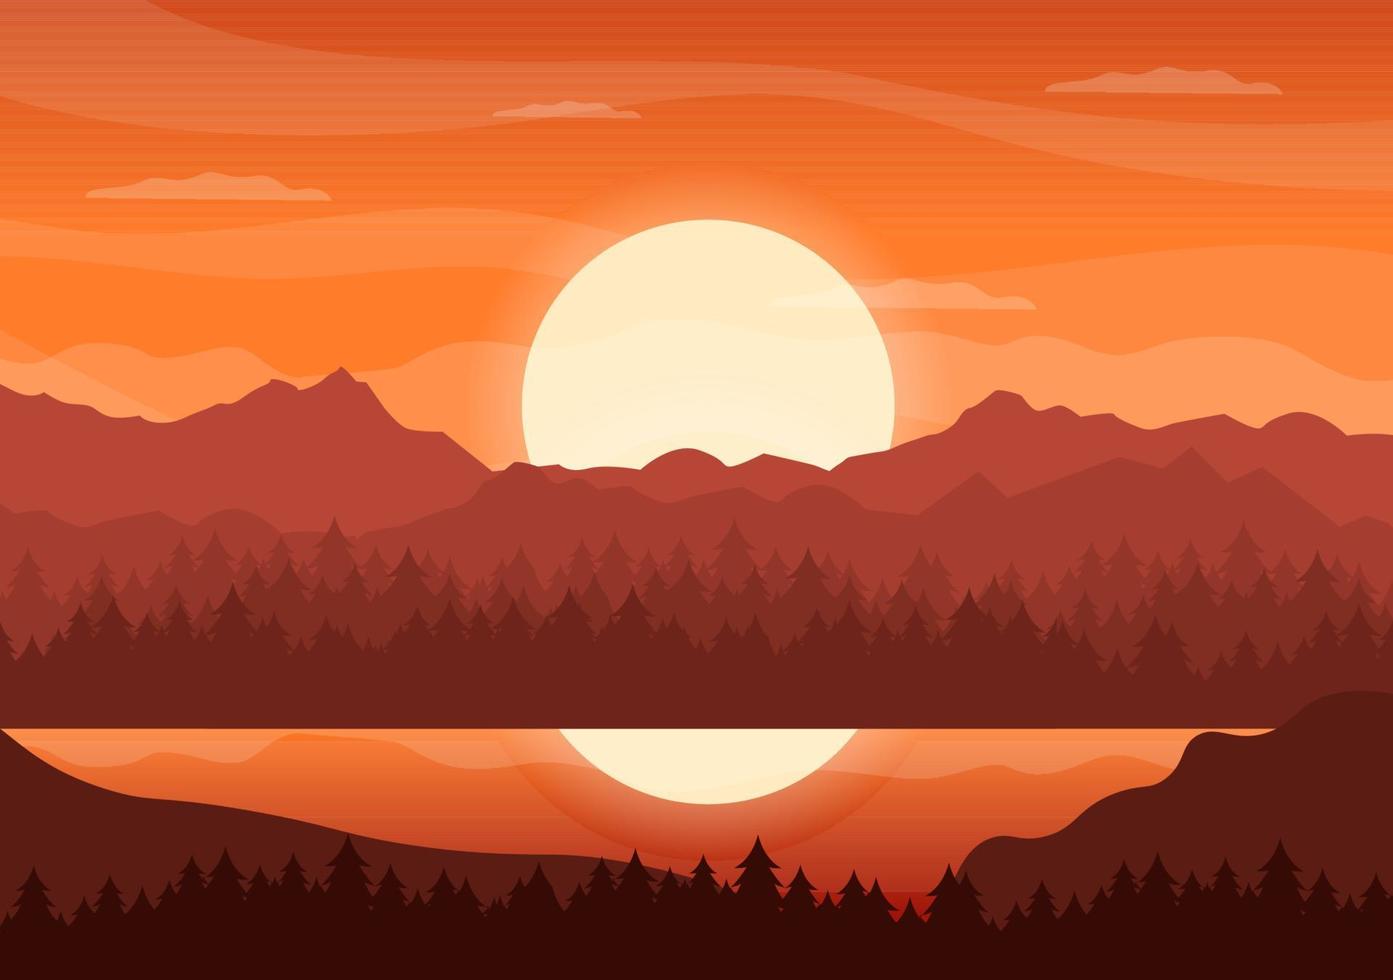 Sonnenuntergangslandschaft von Bergen, Wildnis, Sand, See und Tal in flacher wilder Natur für Poster, Banner oder Hintergrundillustration vektor